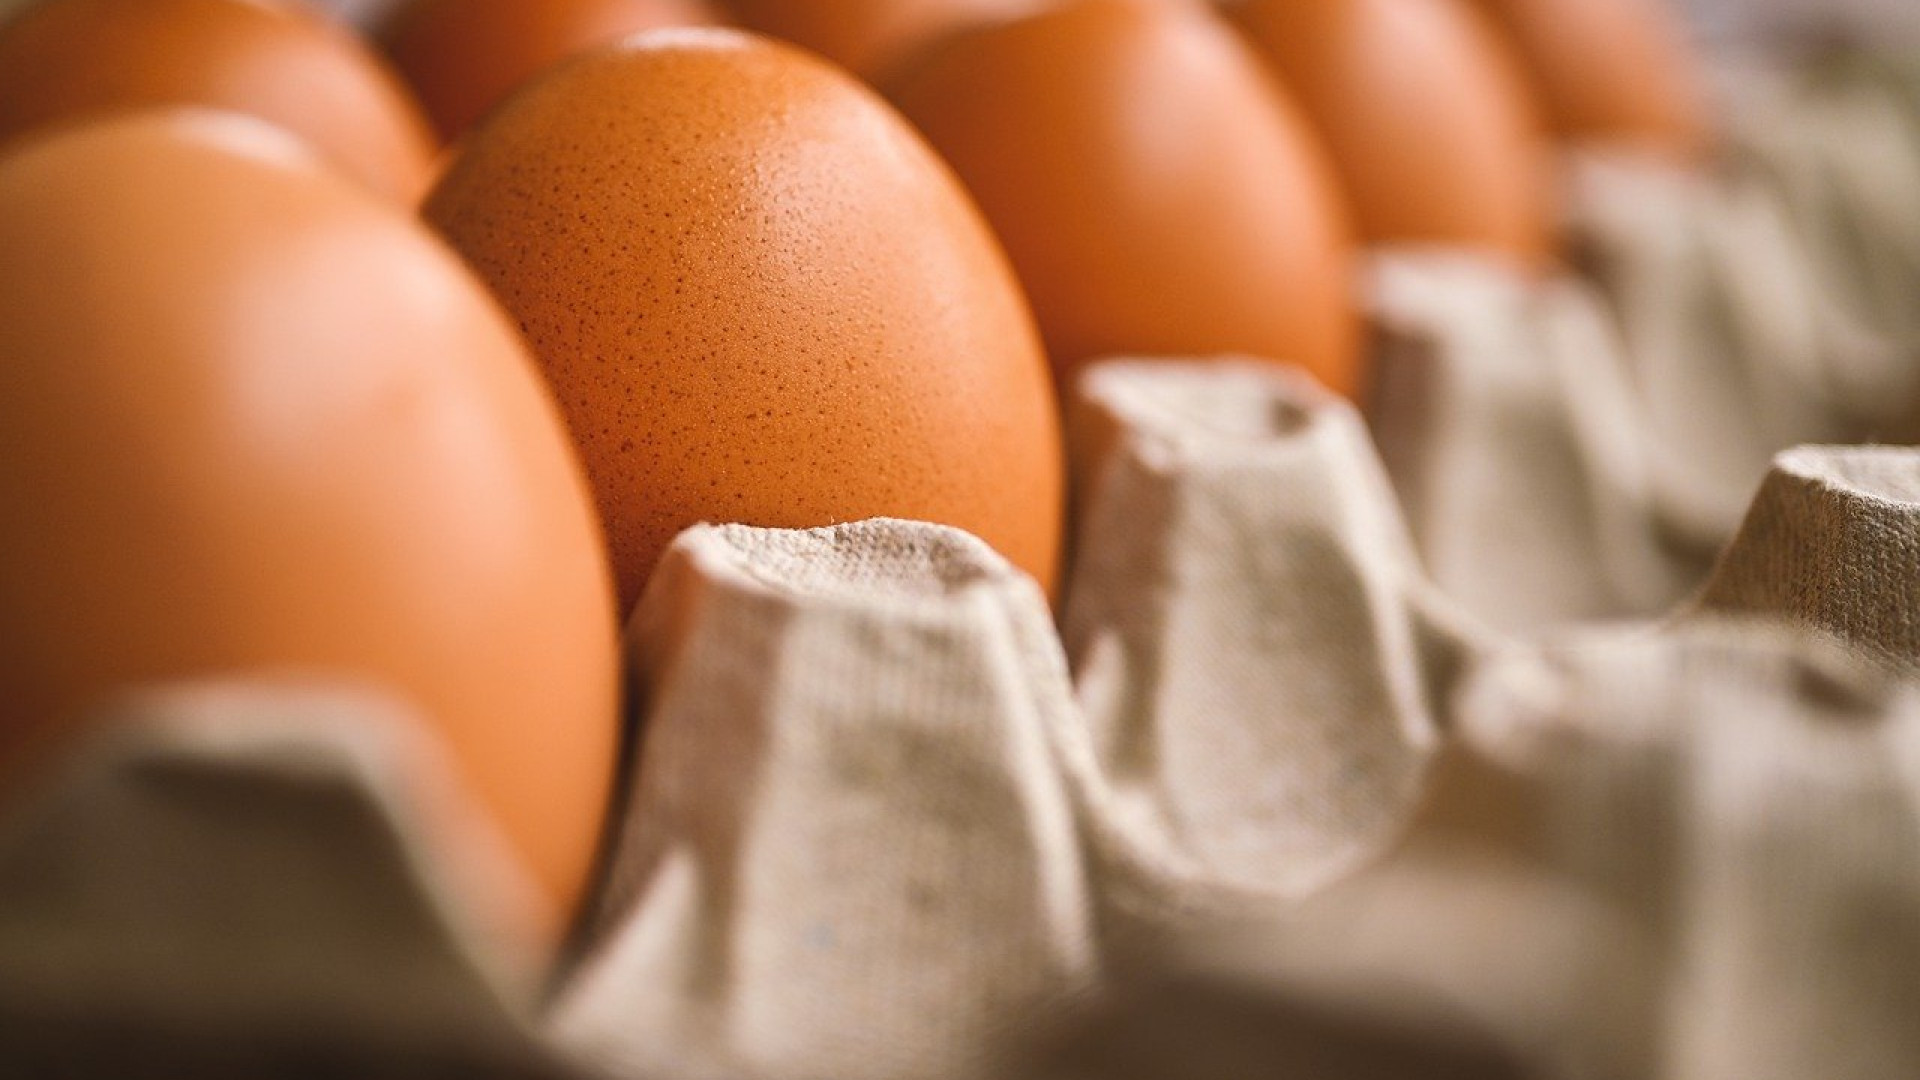 Les œufs frais : un aliment santé à ne pas négliger !